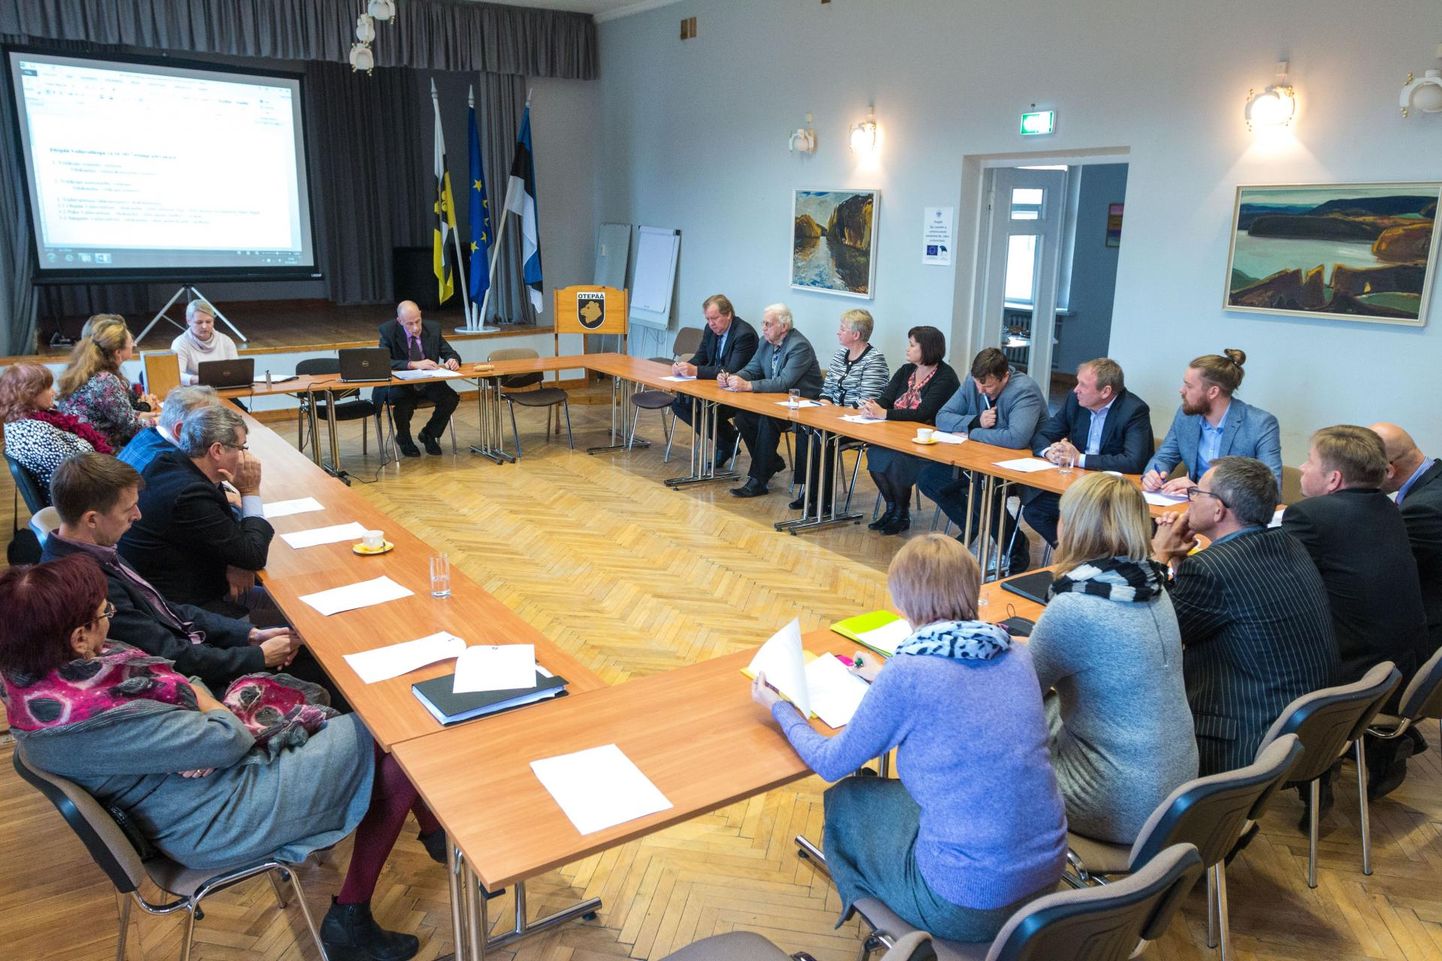 Kui tavaliselt toimuvad Otepää volikogu istungid vallamajas, nagu sellelgi pildil näha on, siis sel reedel tuleb istung juba teist korda kultuurikeskuses.